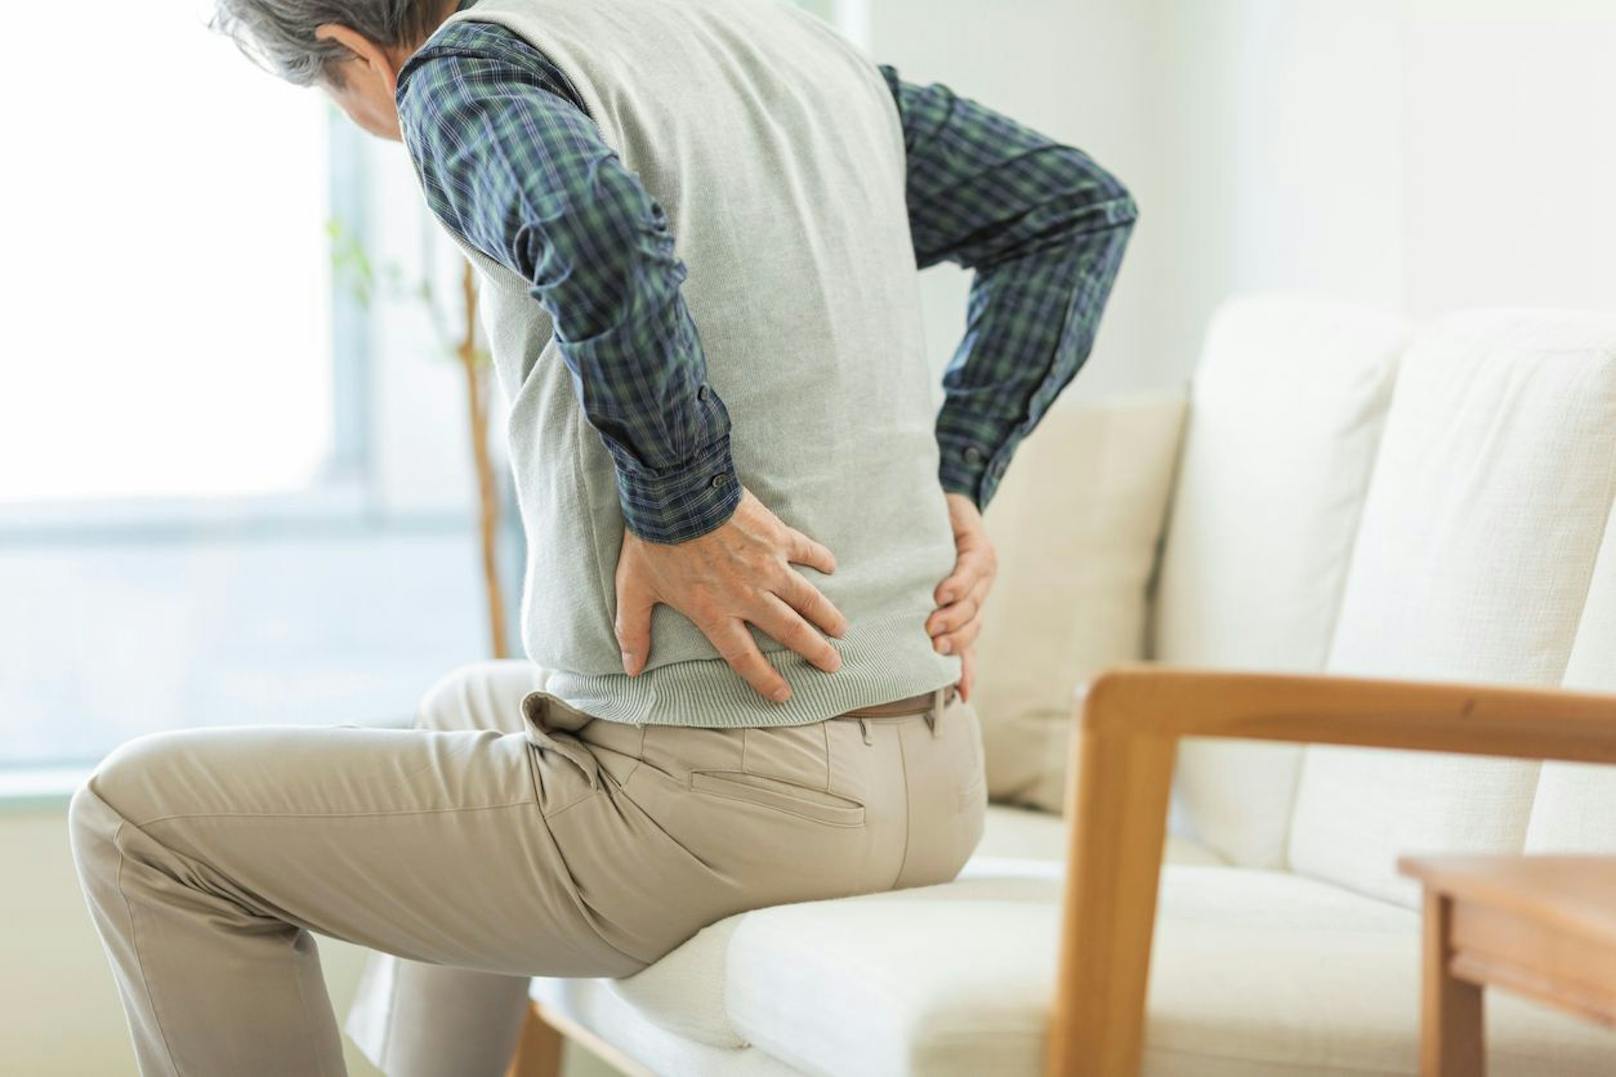 Der Mann wollt für seine Rückenschmerzen eine rasche Linderung haben.